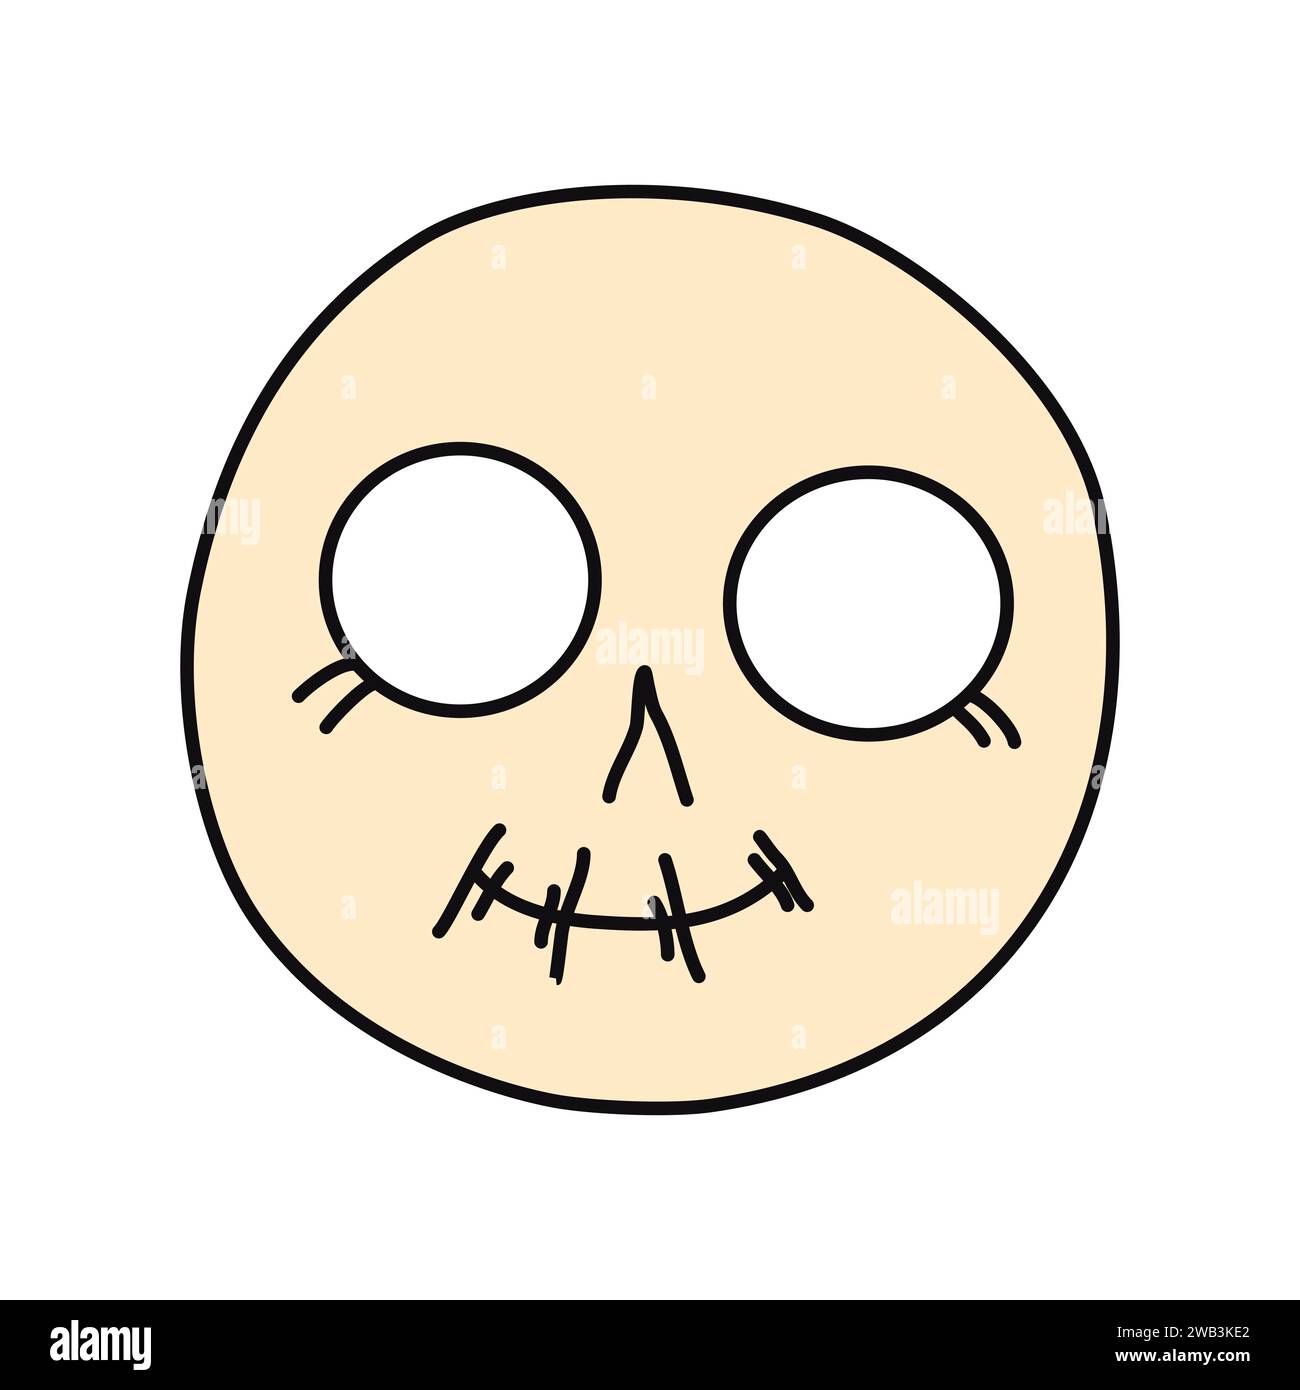 Emo Face Skull. Stile Y2K. Subcultura nera. Illustrazione vettoriale piatta isolata su sfondo bianco Illustrazione Vettoriale